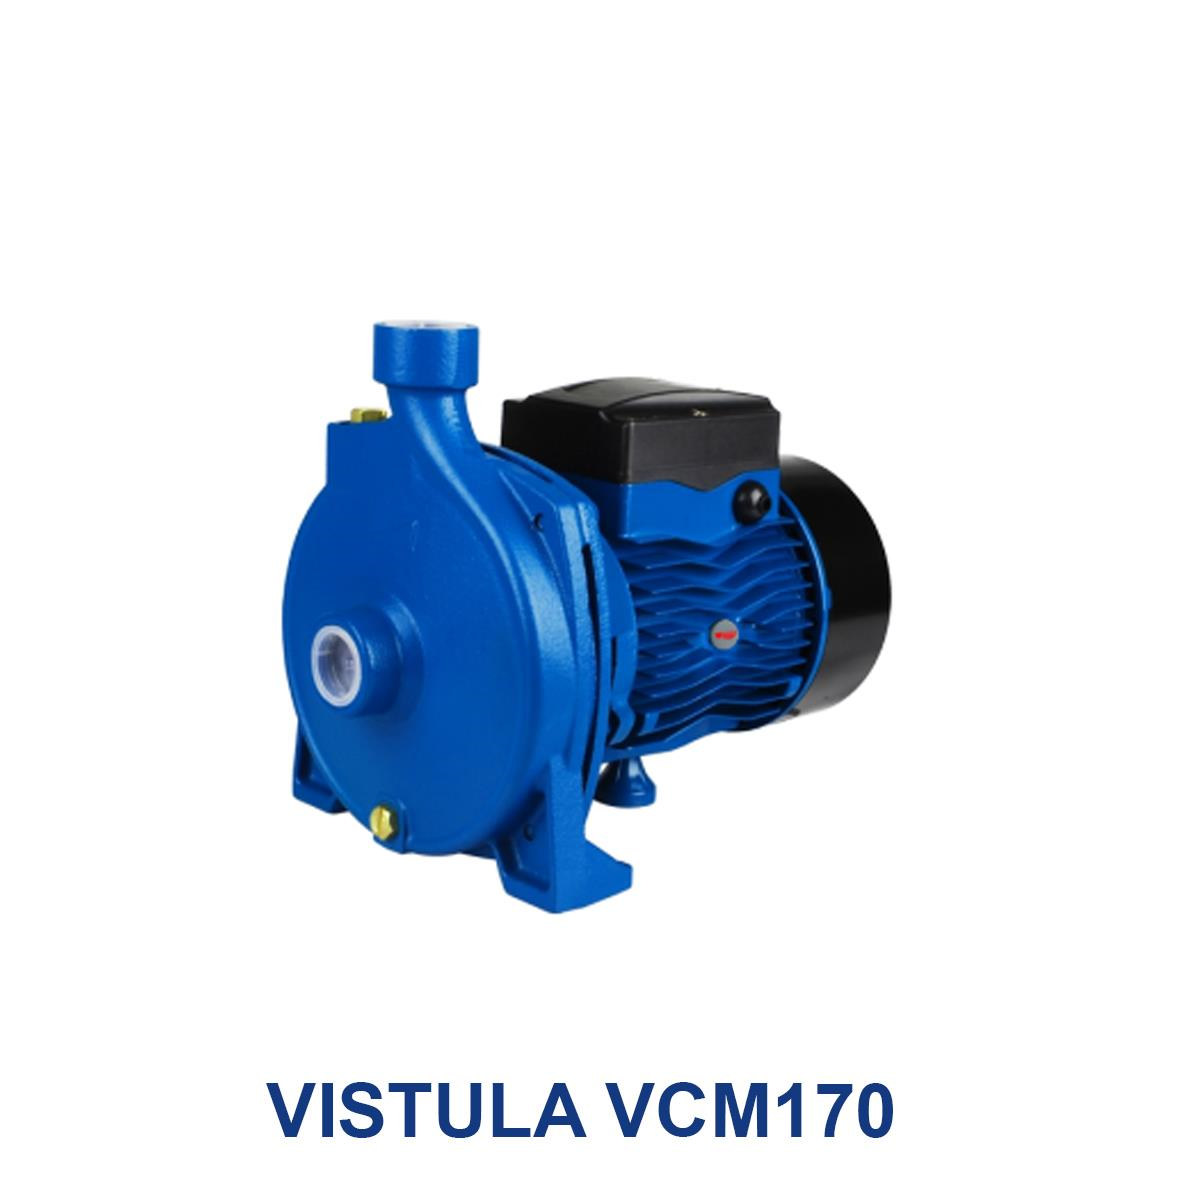 VISTULA-VCM170